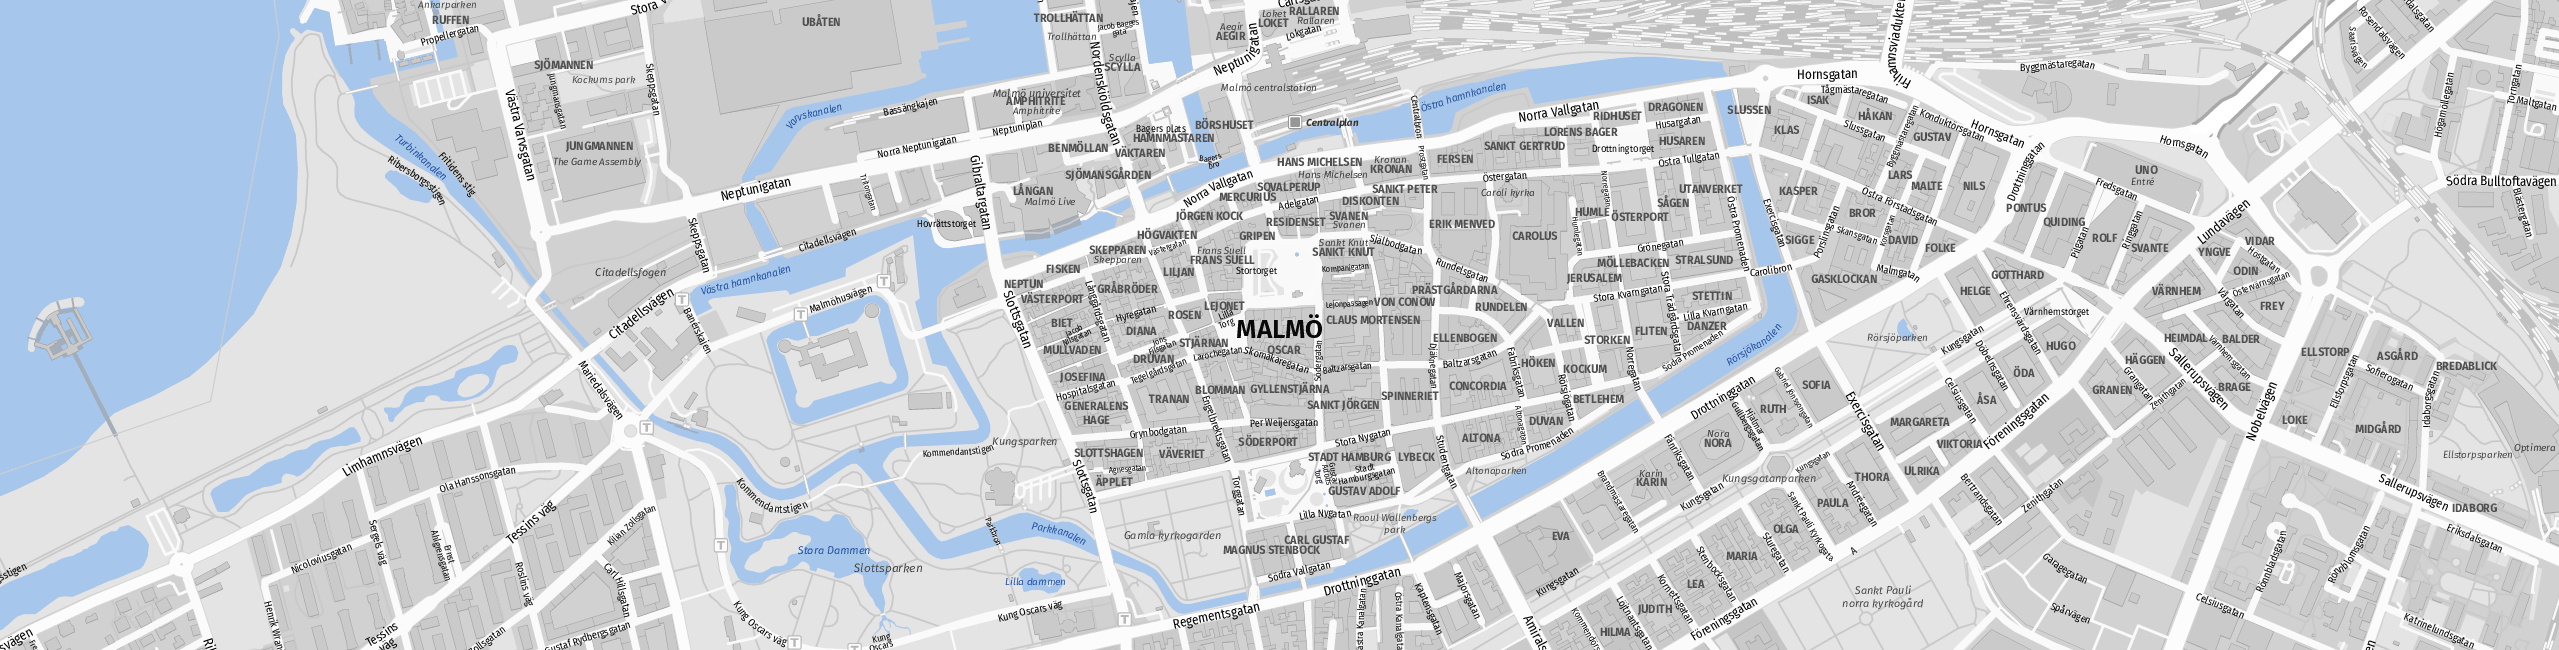 Stadtplan Malmo zum Downloaden.